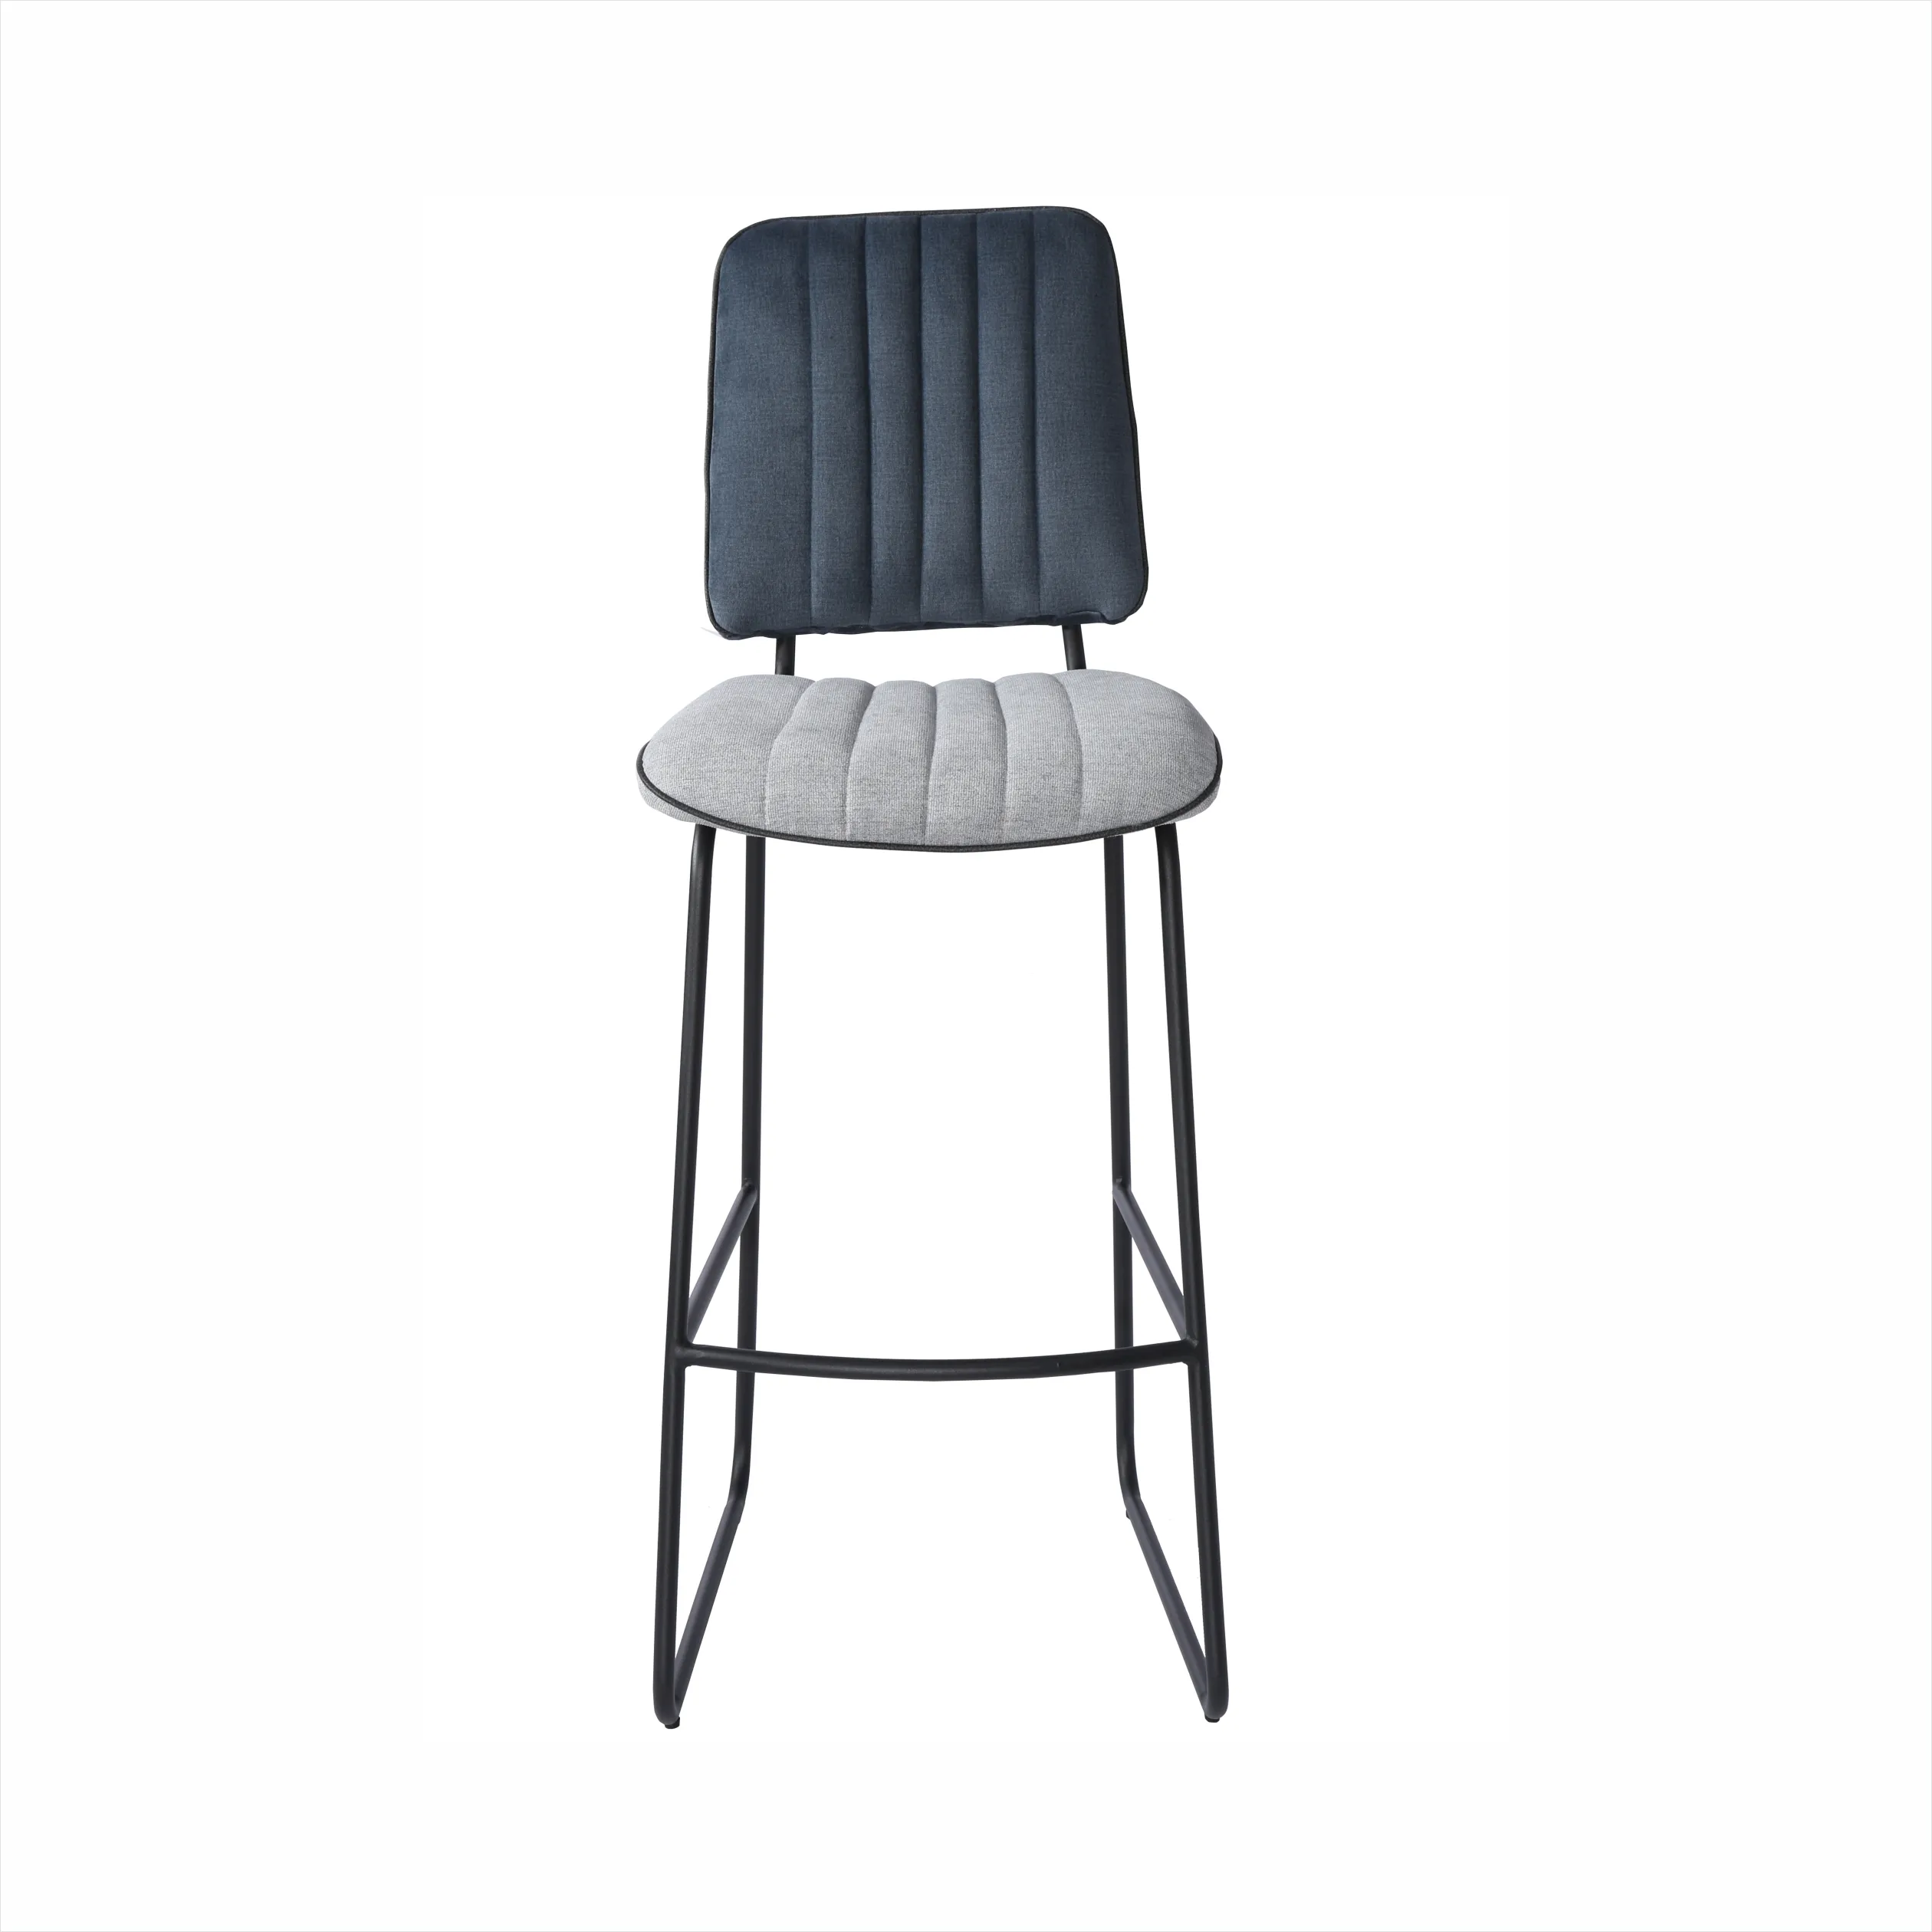 Restaurant grey Velvet Fabric Upholstered High Chair Gold Base Modern Barstool